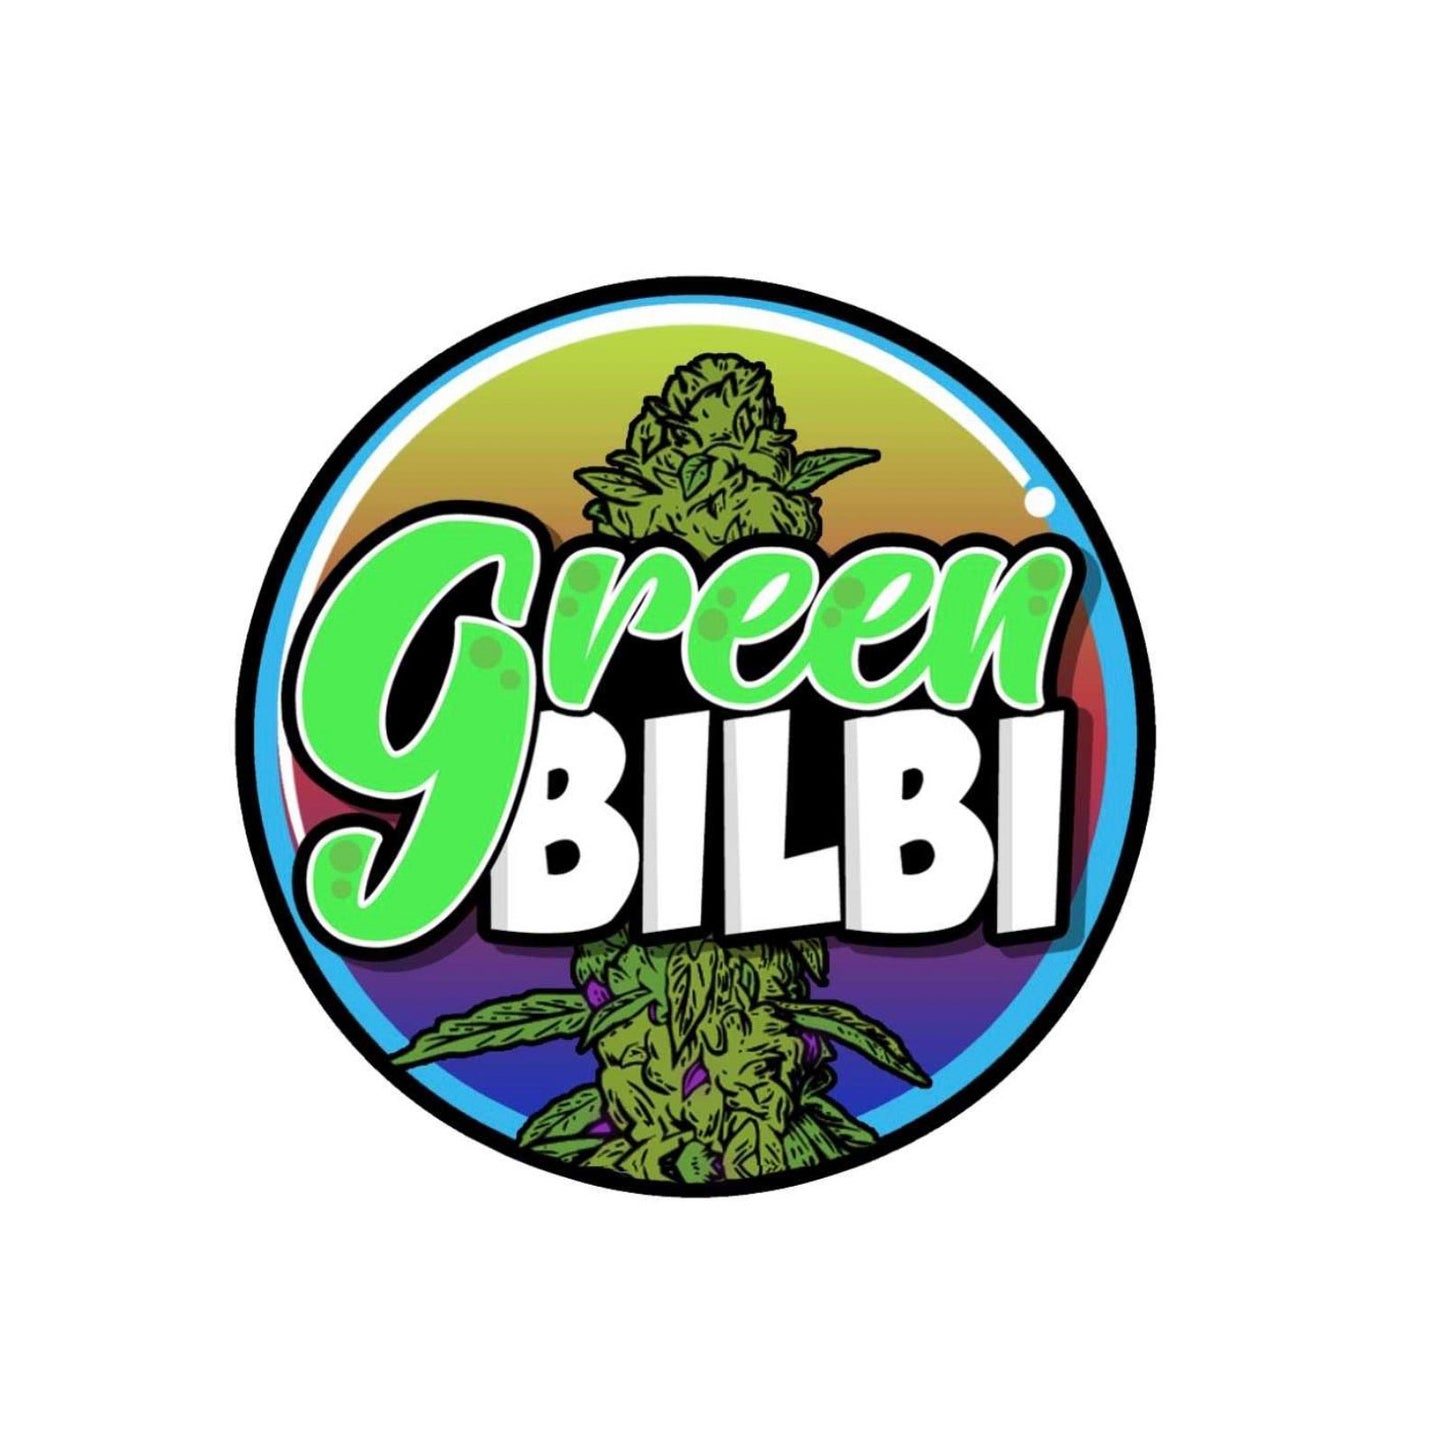 Green Bilbi Bilbao